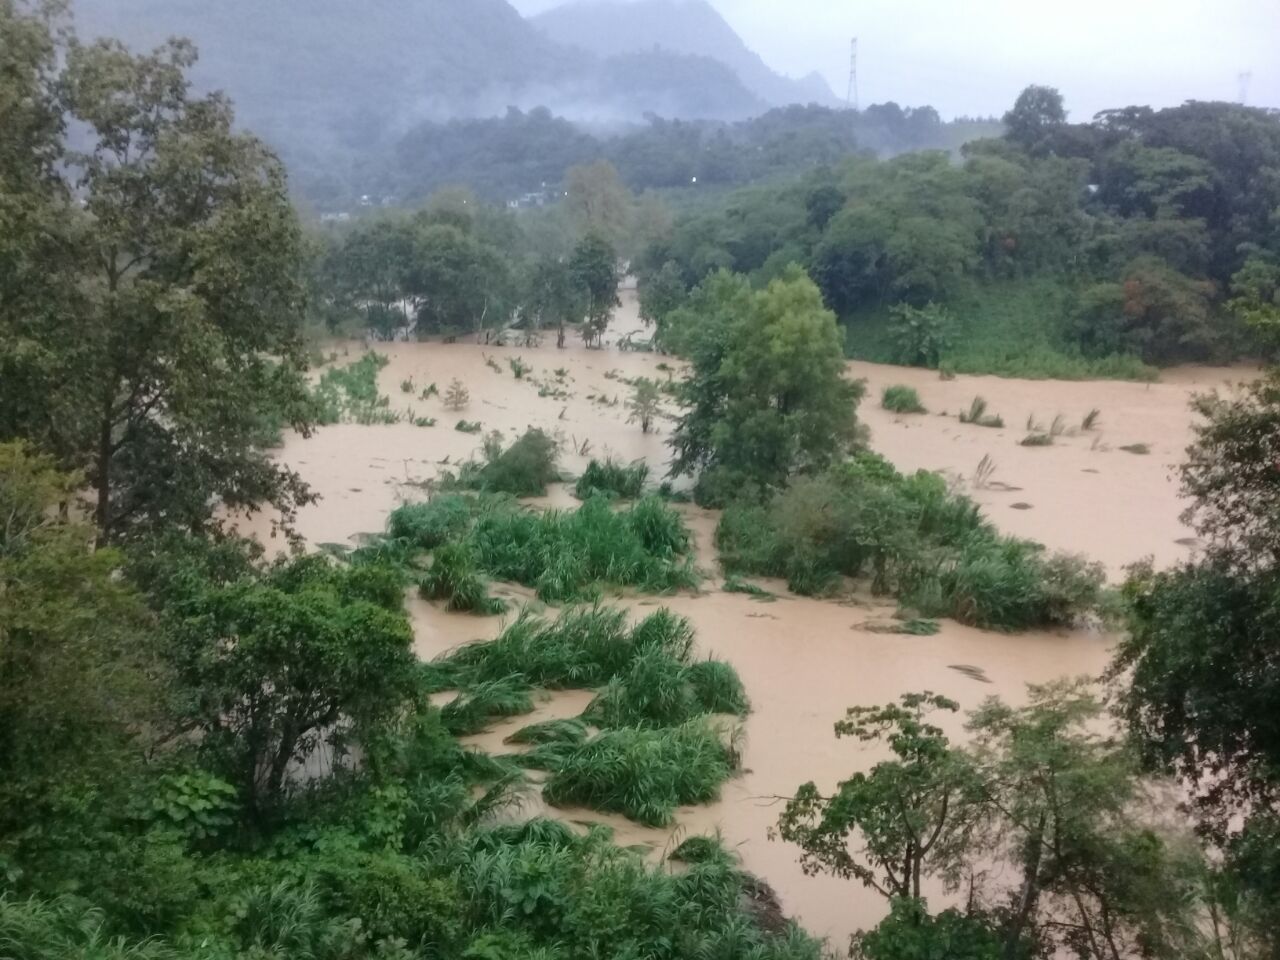 Arroyo inunda casas y sembradíos en comunidad de Xicotepec